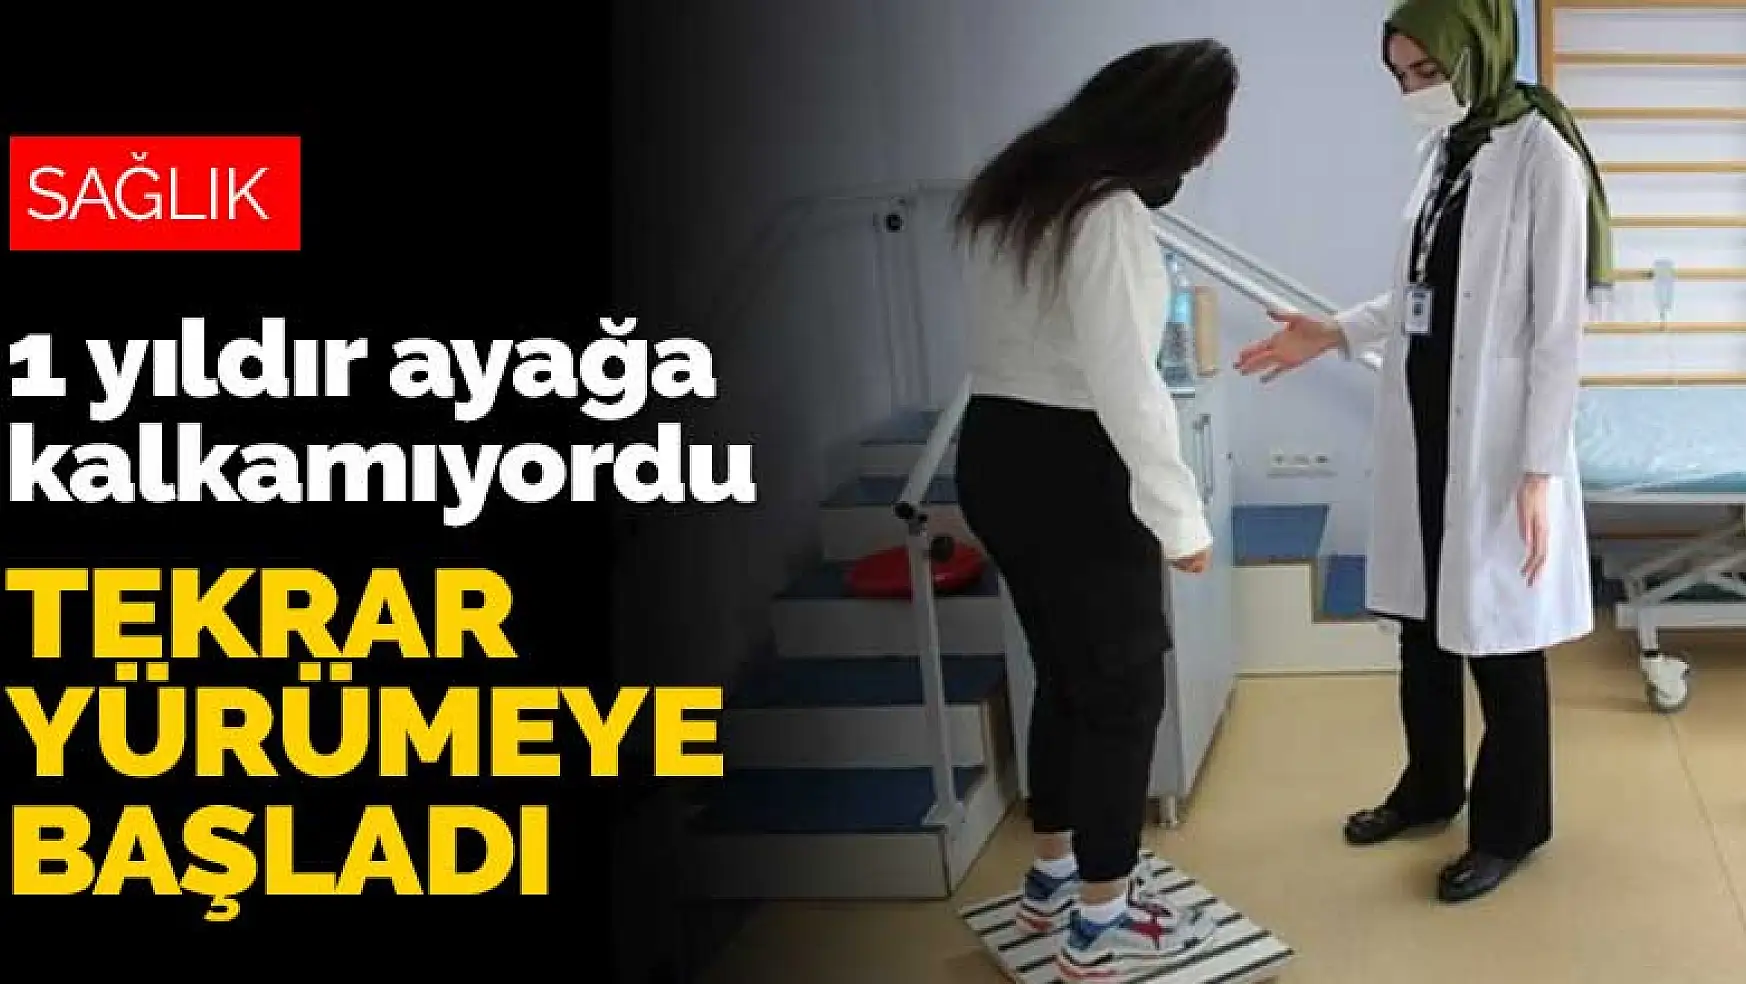 Konya'da diyabet nedeniyle 1 yıldır ayağa kalkamayan liseli Elif tekrar yürümeye başladı